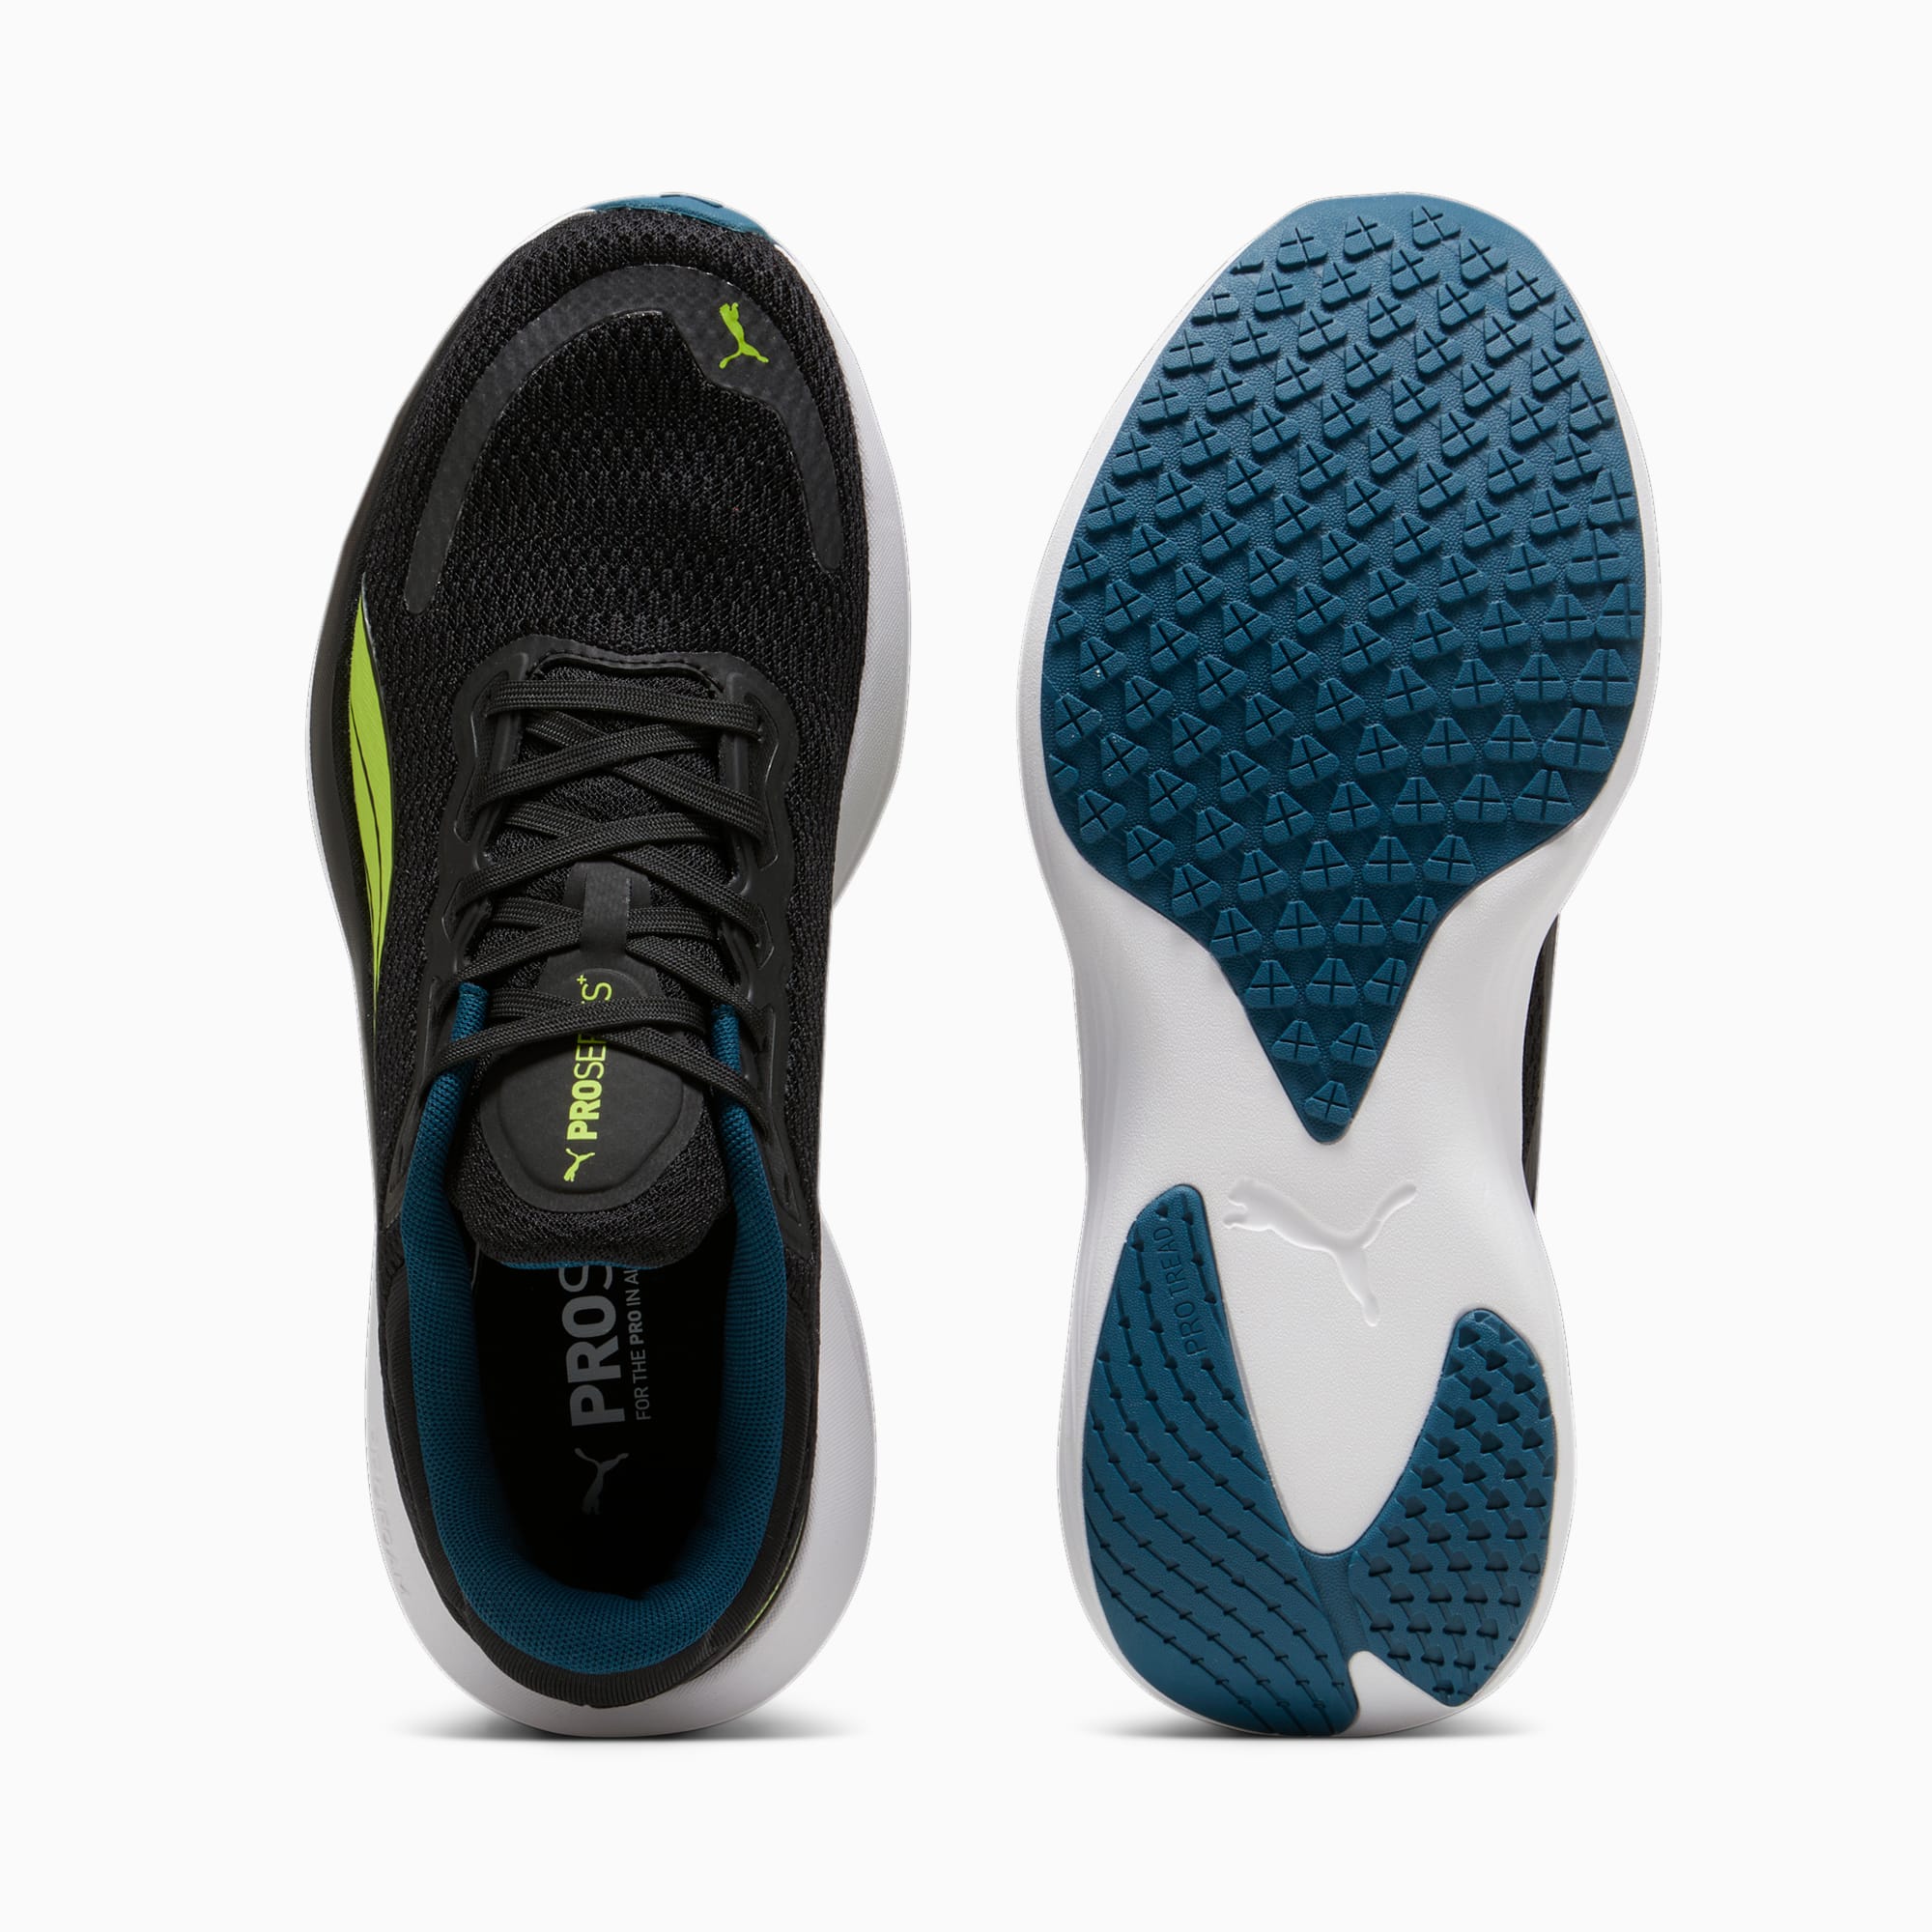 PUMA Chaussures De Running Scend Pro, Noir/Bleu/Vert